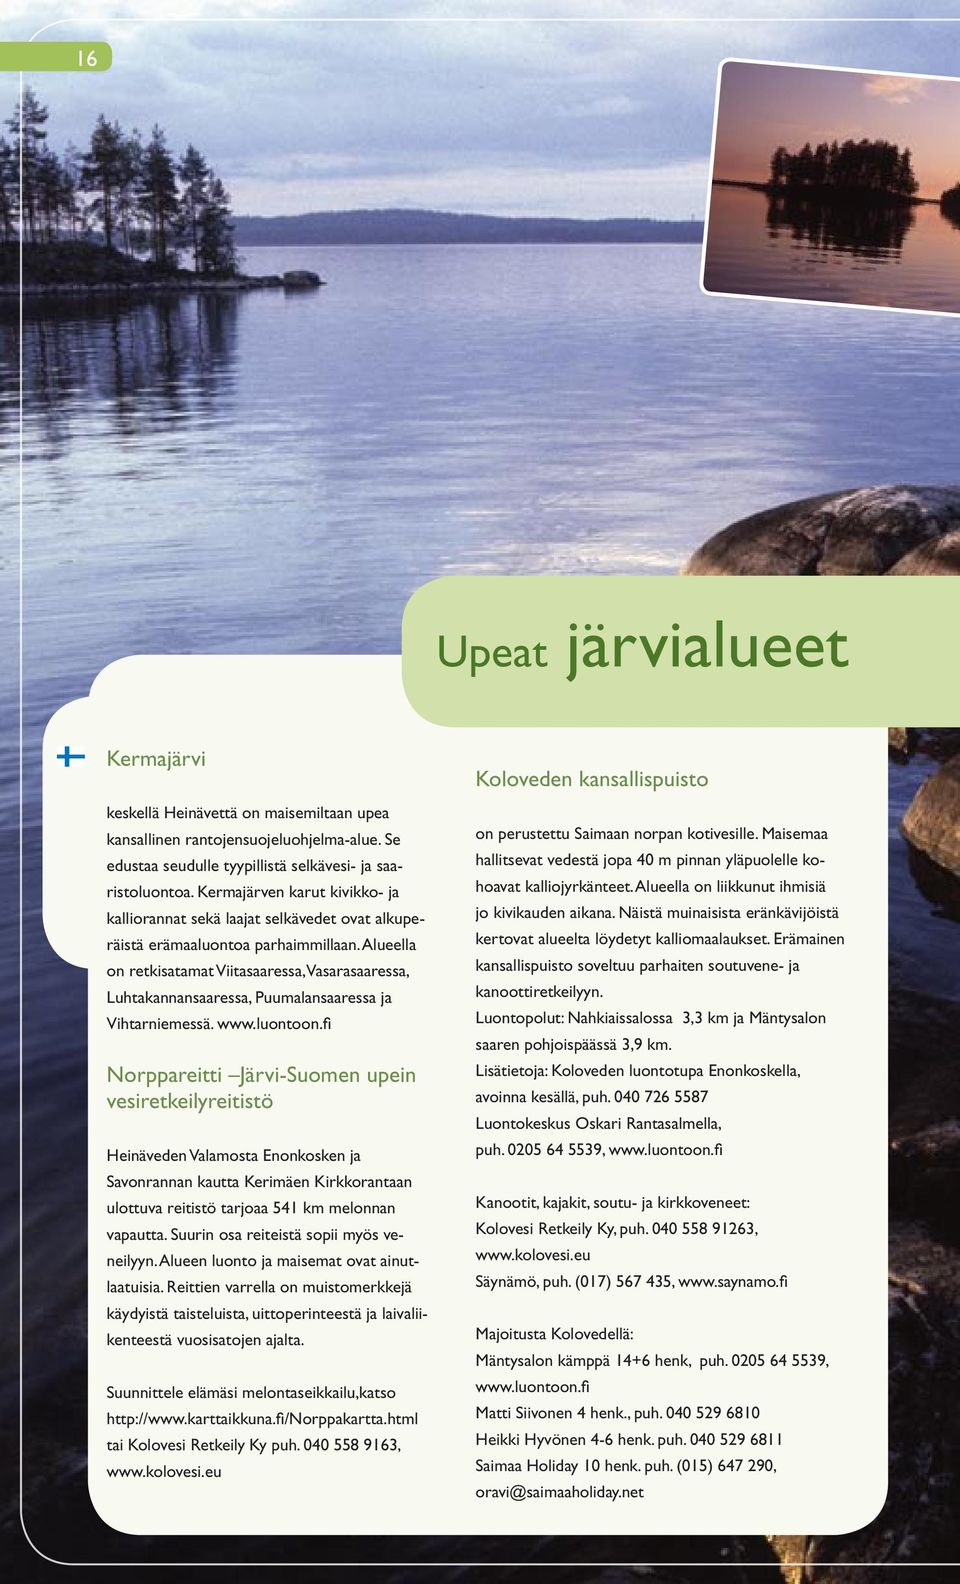 Alueella on retkisatamat Viitasaaressa, Vasarasaaressa, Luhtakannansaaressa, Puumalansaaressa ja Vihtarniemessä. www.luontoon.